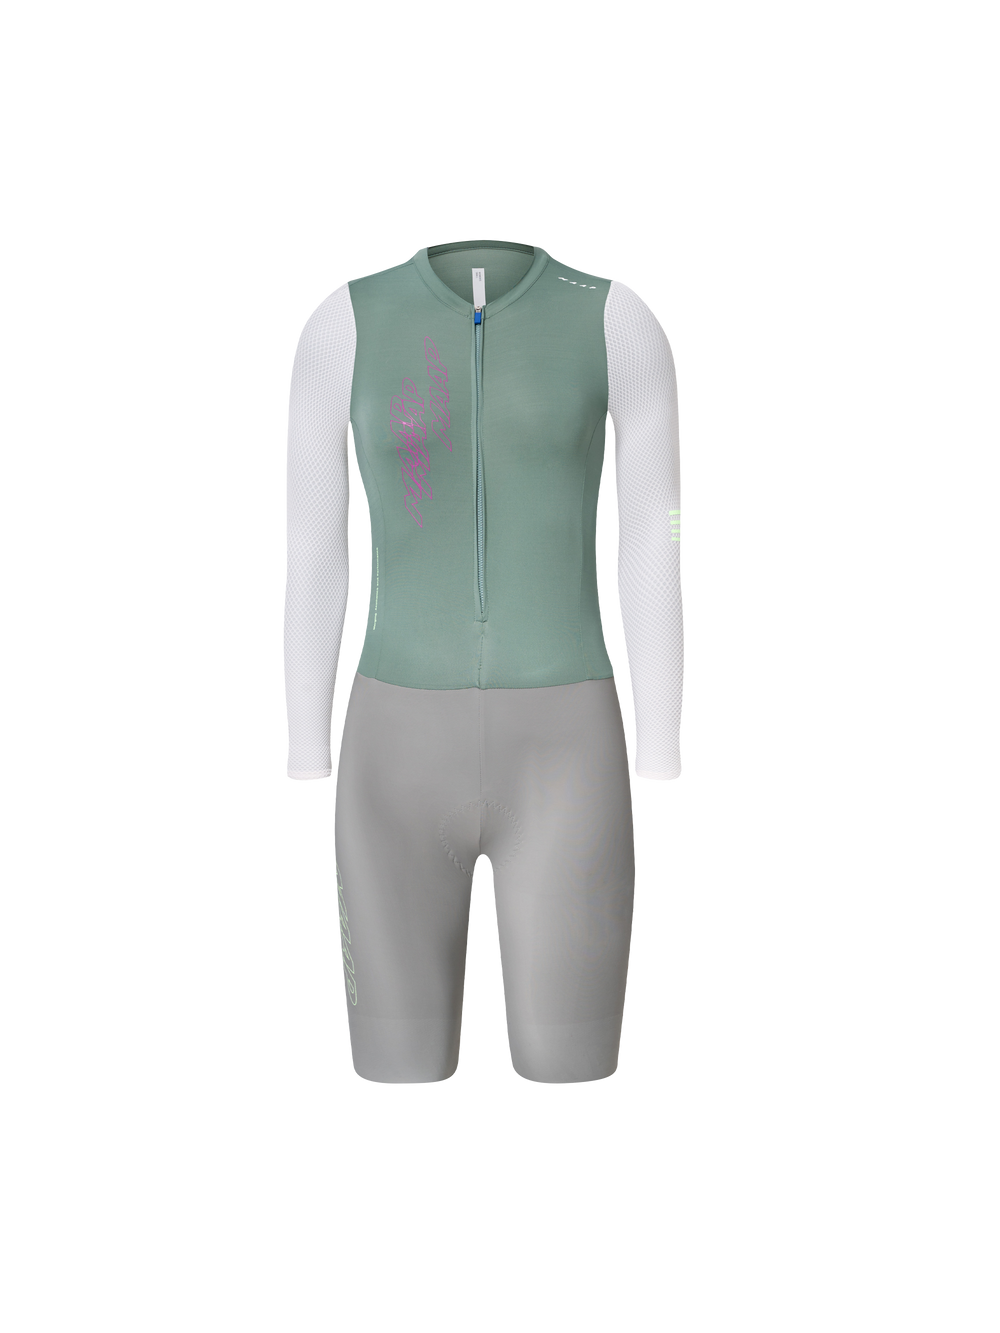 Product Image for Women's Pro Base LS Race Suit